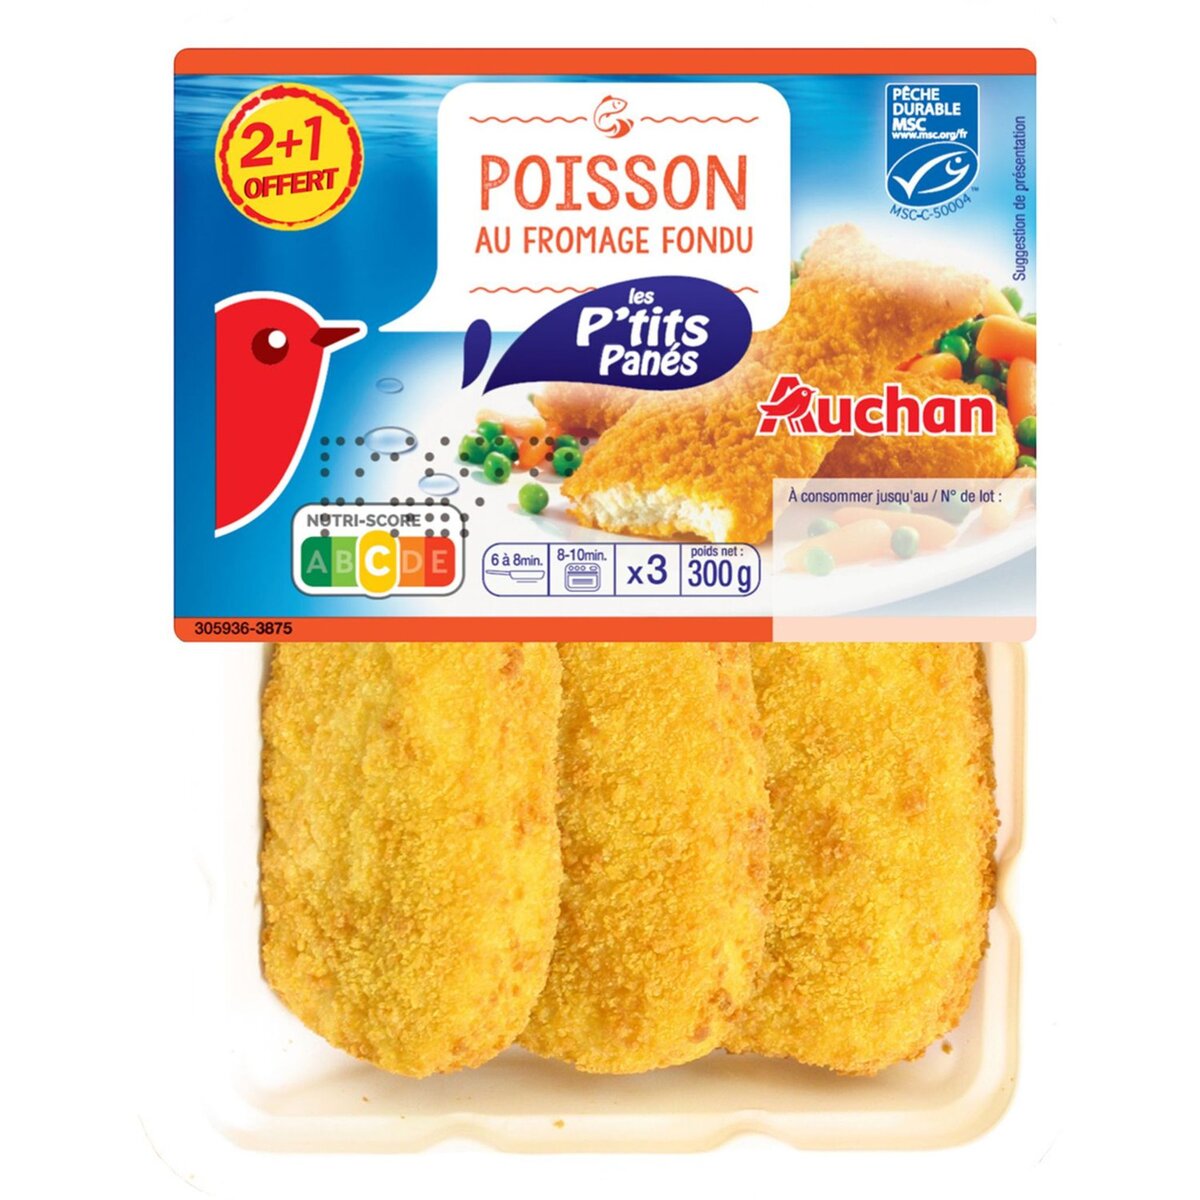 AUCHAN Les P'tits Panés Poissons au fromage fondu 2+1 offert 300g